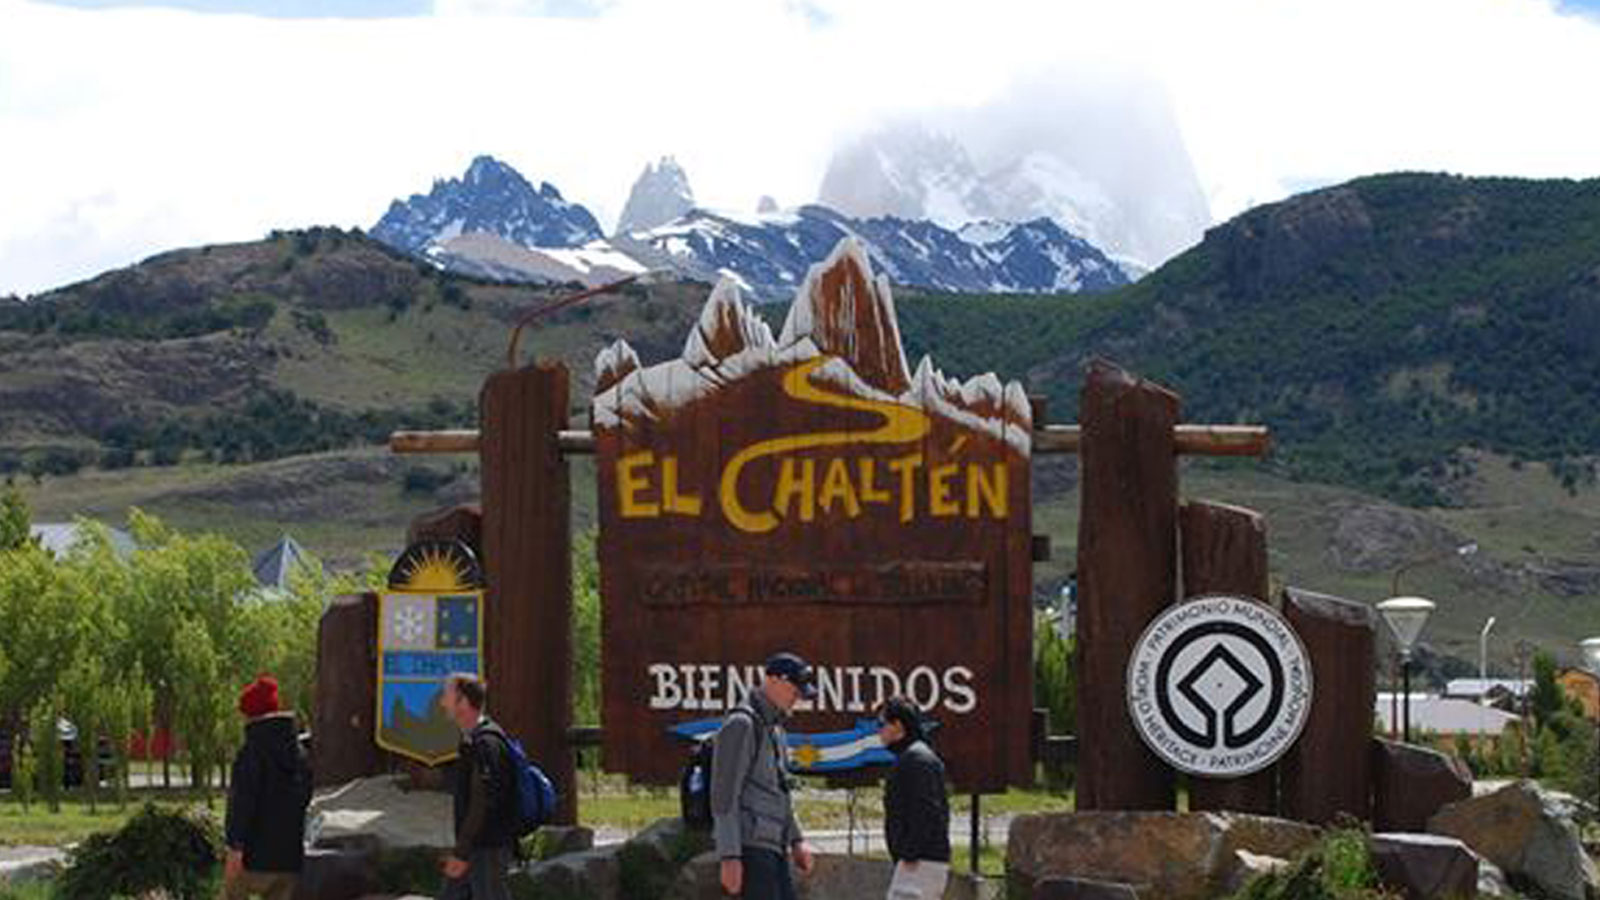 O que ver e fazer em El Chaltén?